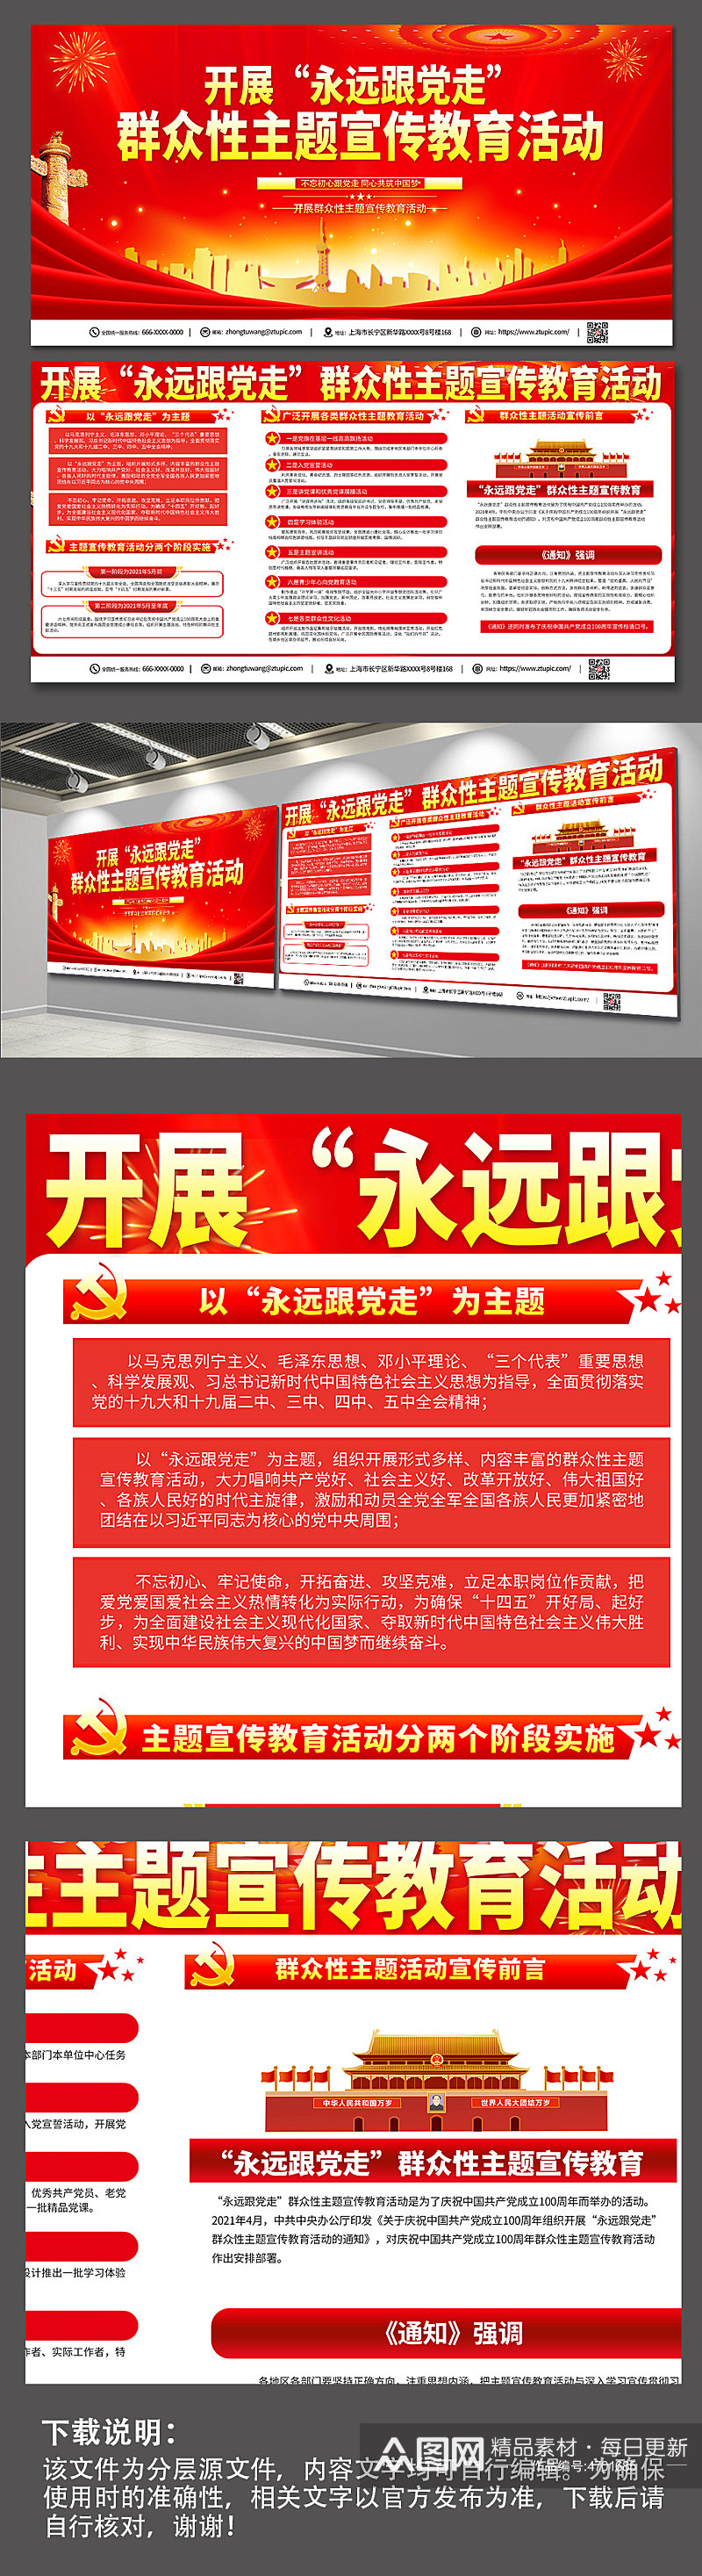 红色喜庆群众性主题宣传教育活动党建展板素材